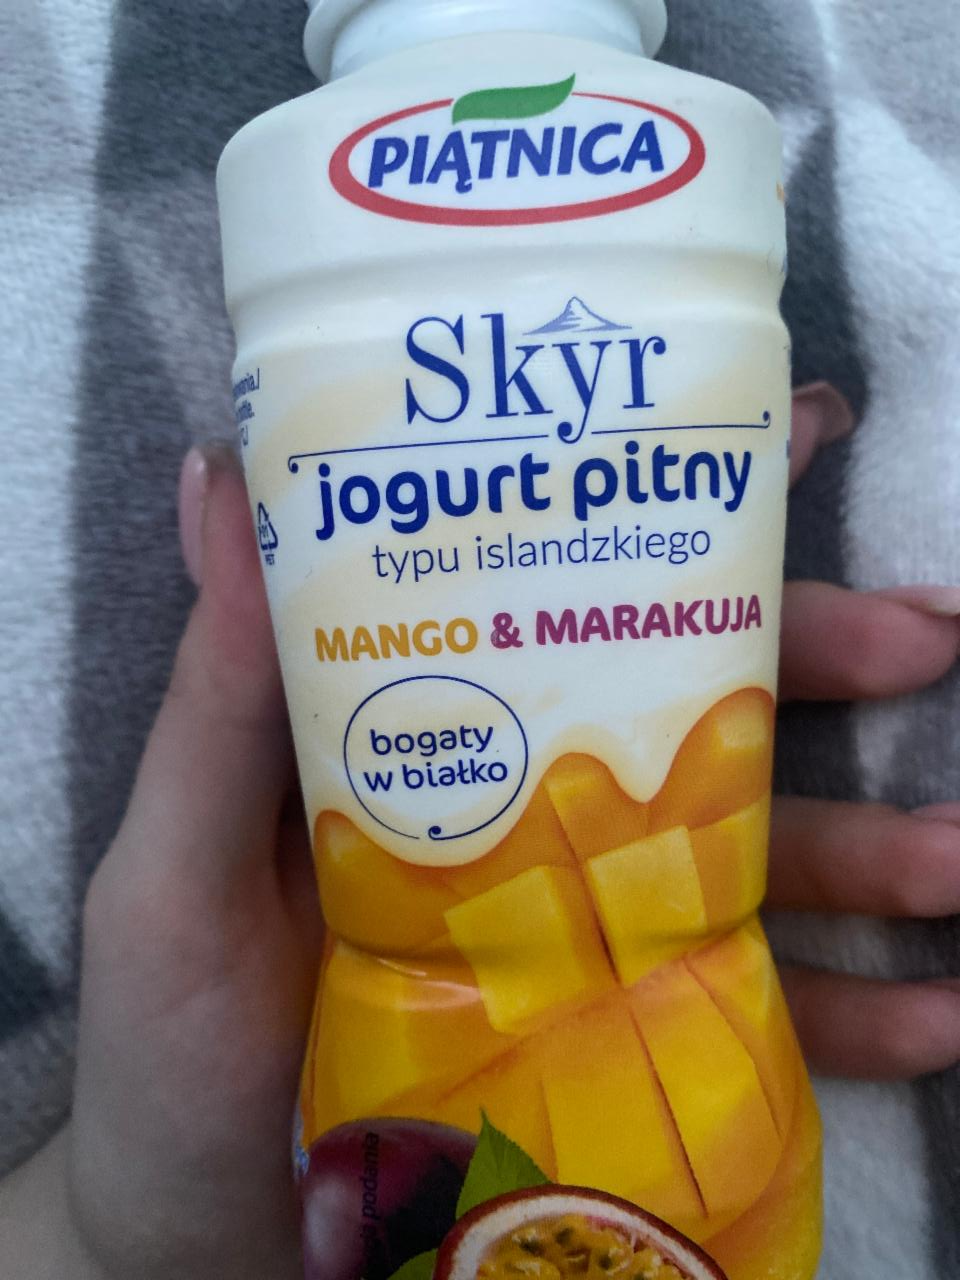 Zdjęcia - Skyr jogurt pitny typu islandzkiego mango i marakuja Piątnica